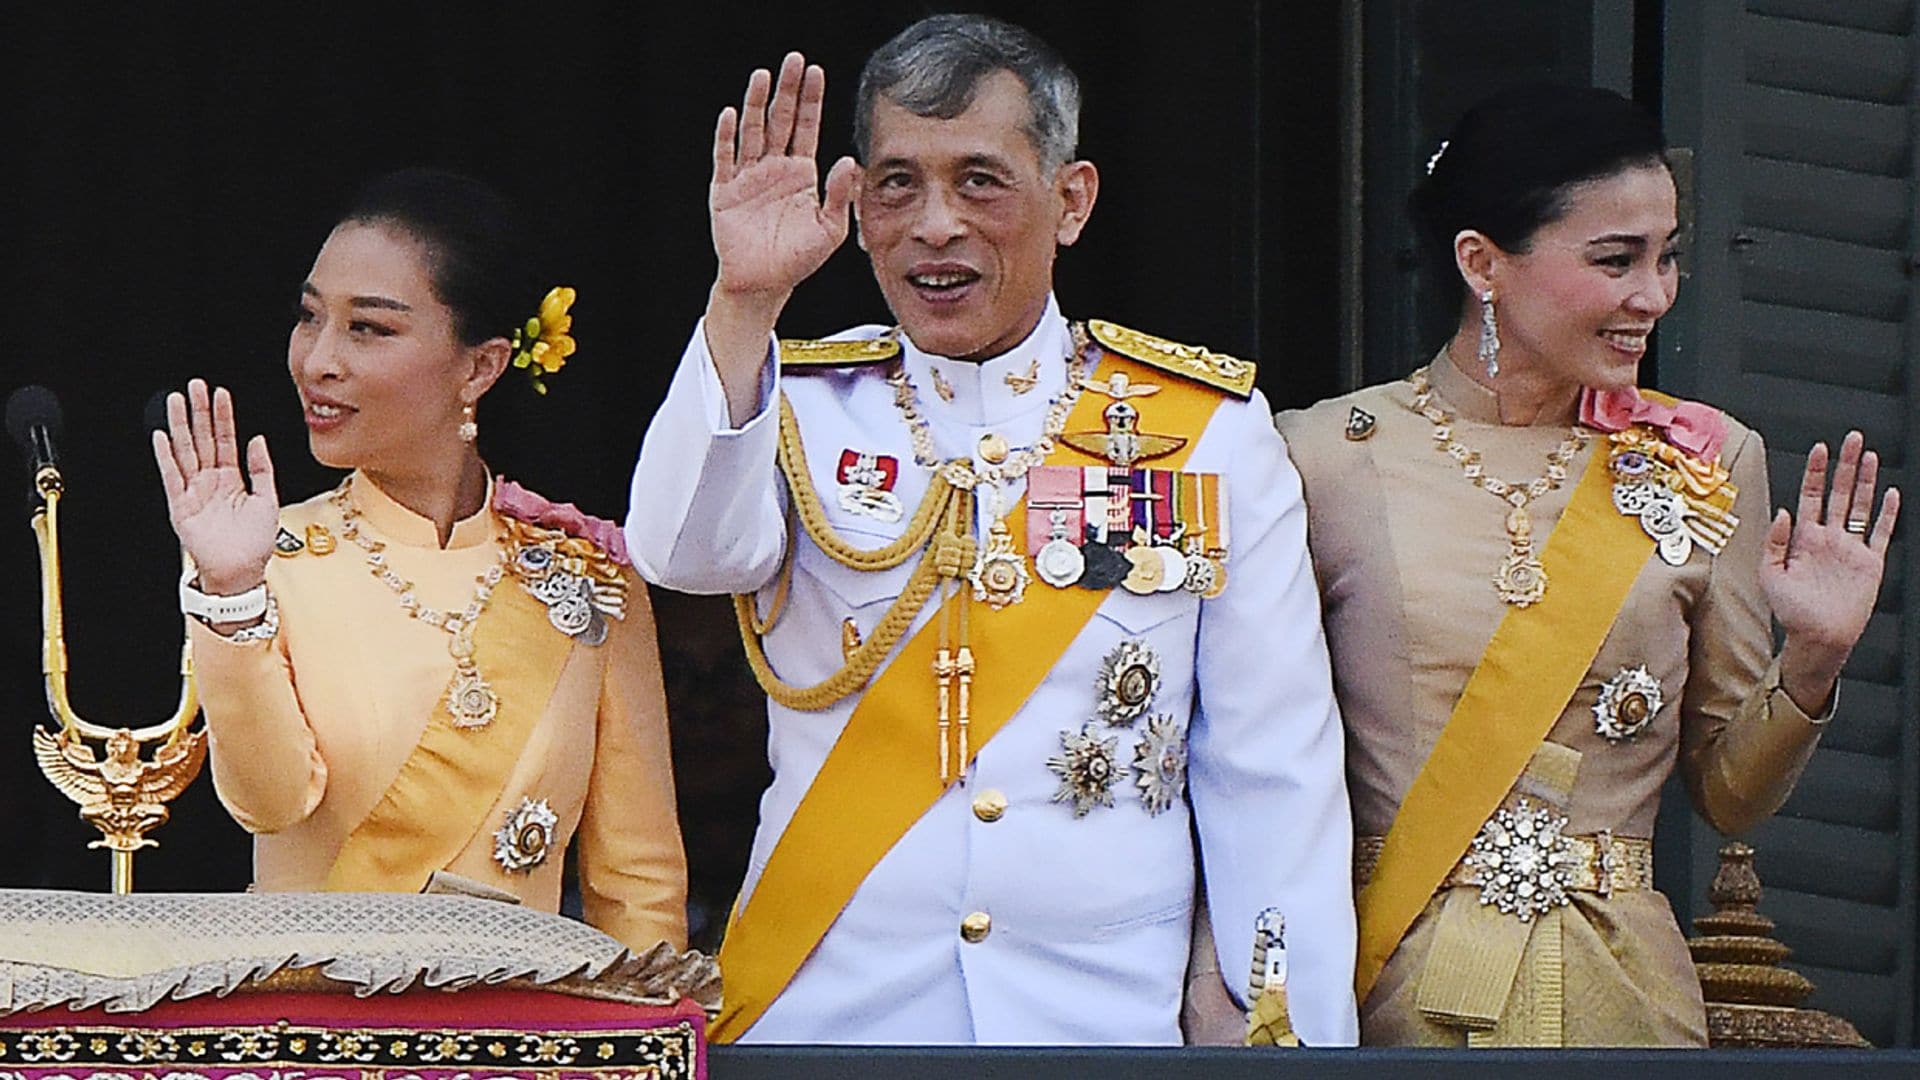 La hija mayor del Rey de Tailandia se encuentra 'estable hasta cierto punto' y tiene afectados órganos vitales